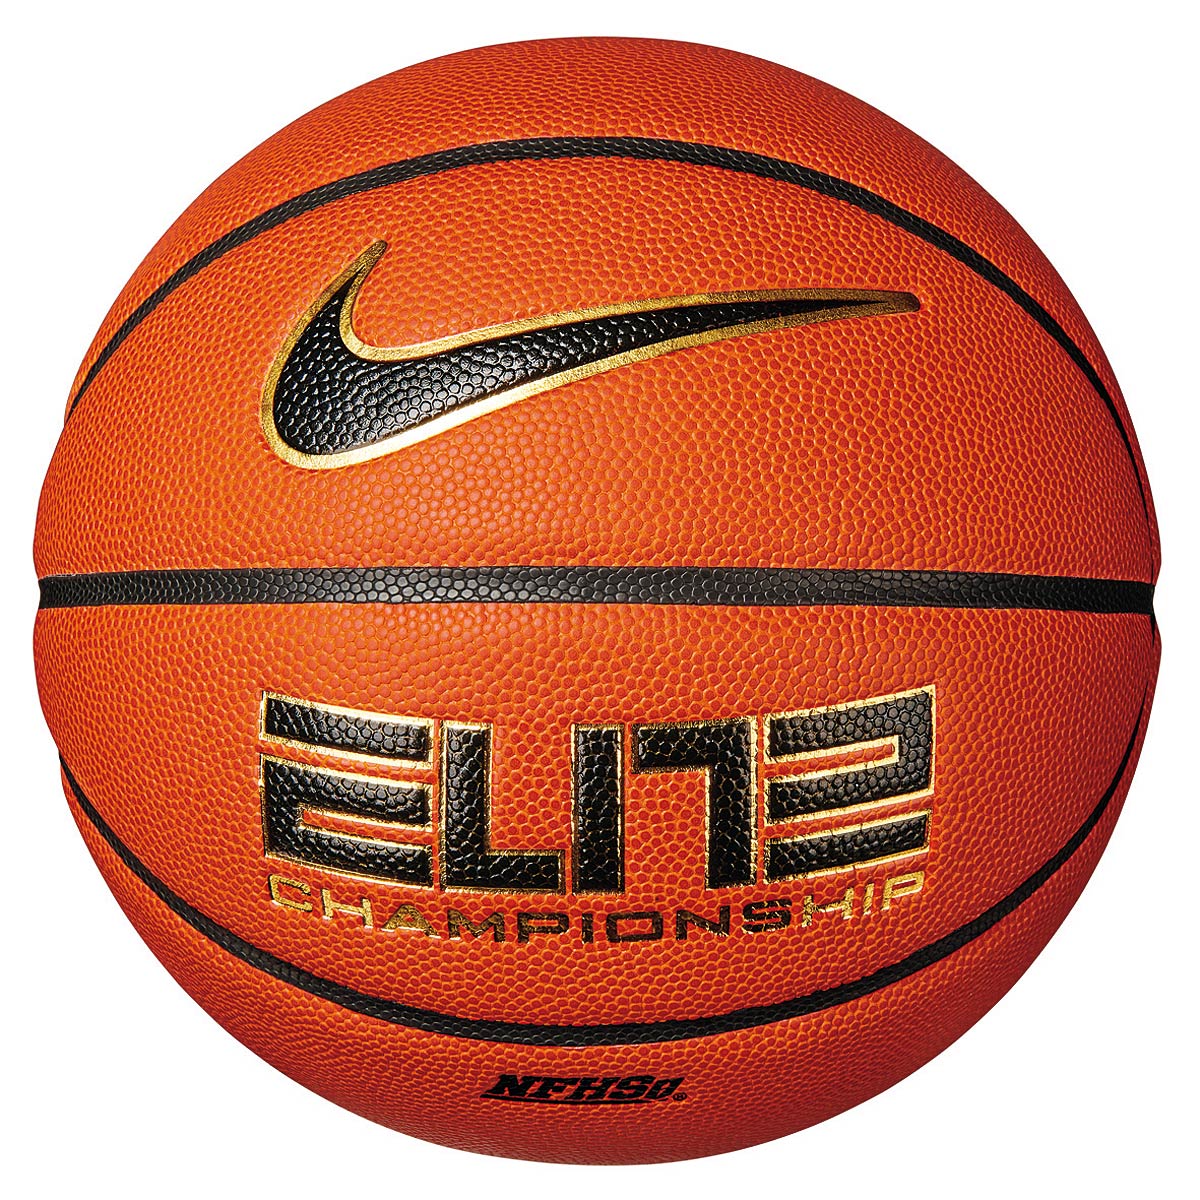 Nike Elite Championship 8P 2.0 Basketball, 878 Amber/Black/Metallic Gold/Black